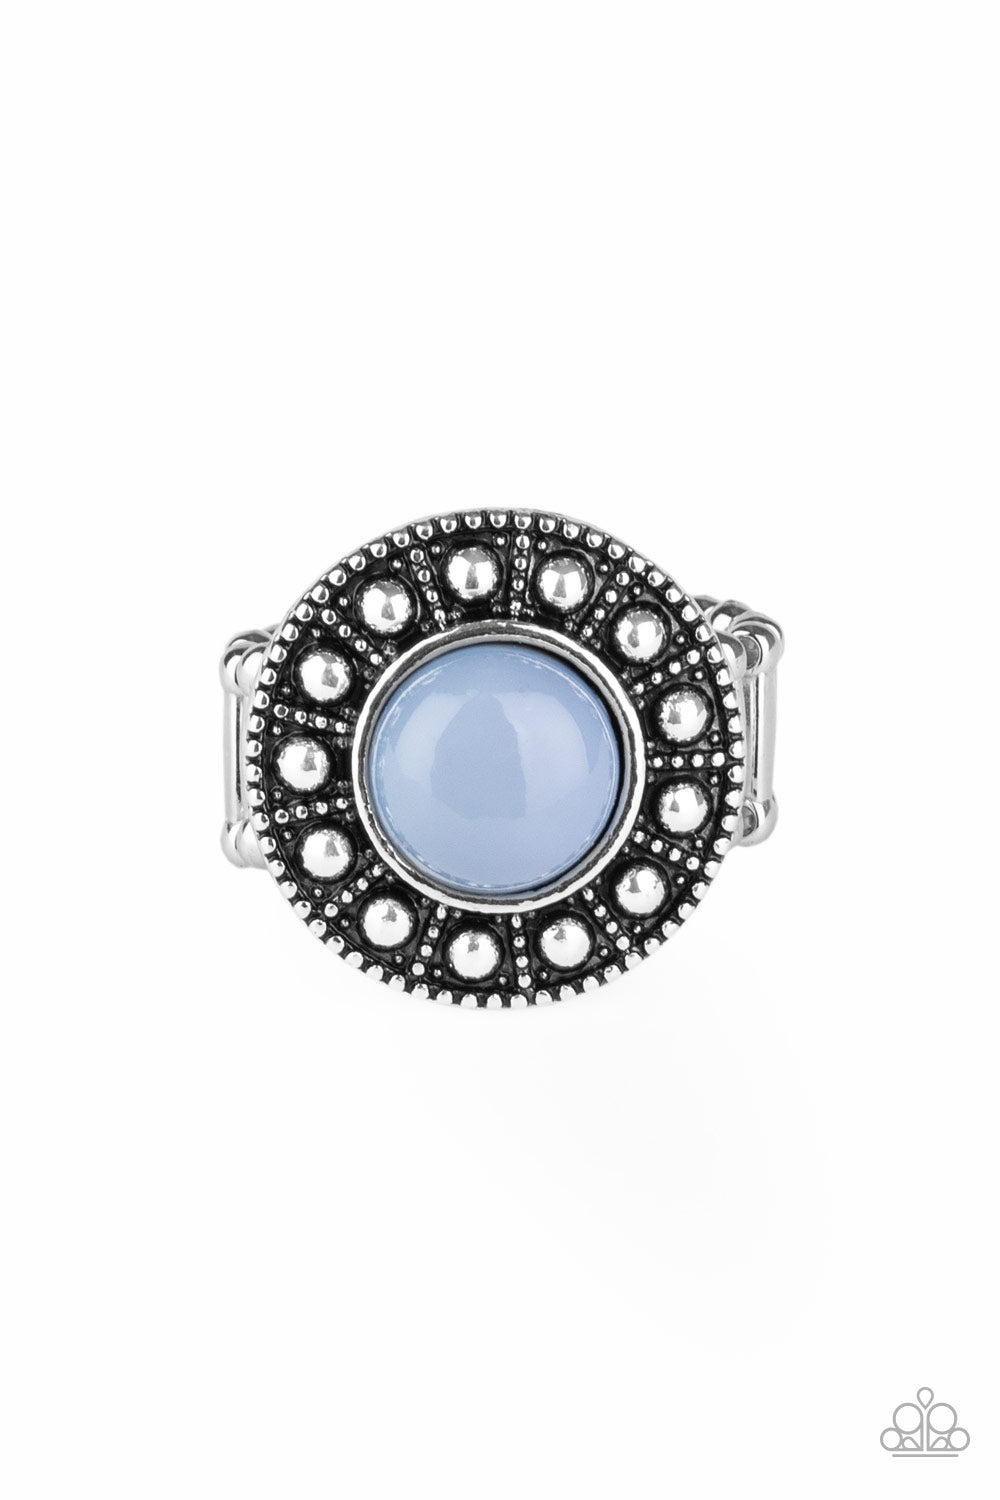 Treasure Chest Shimmer - Blue ring